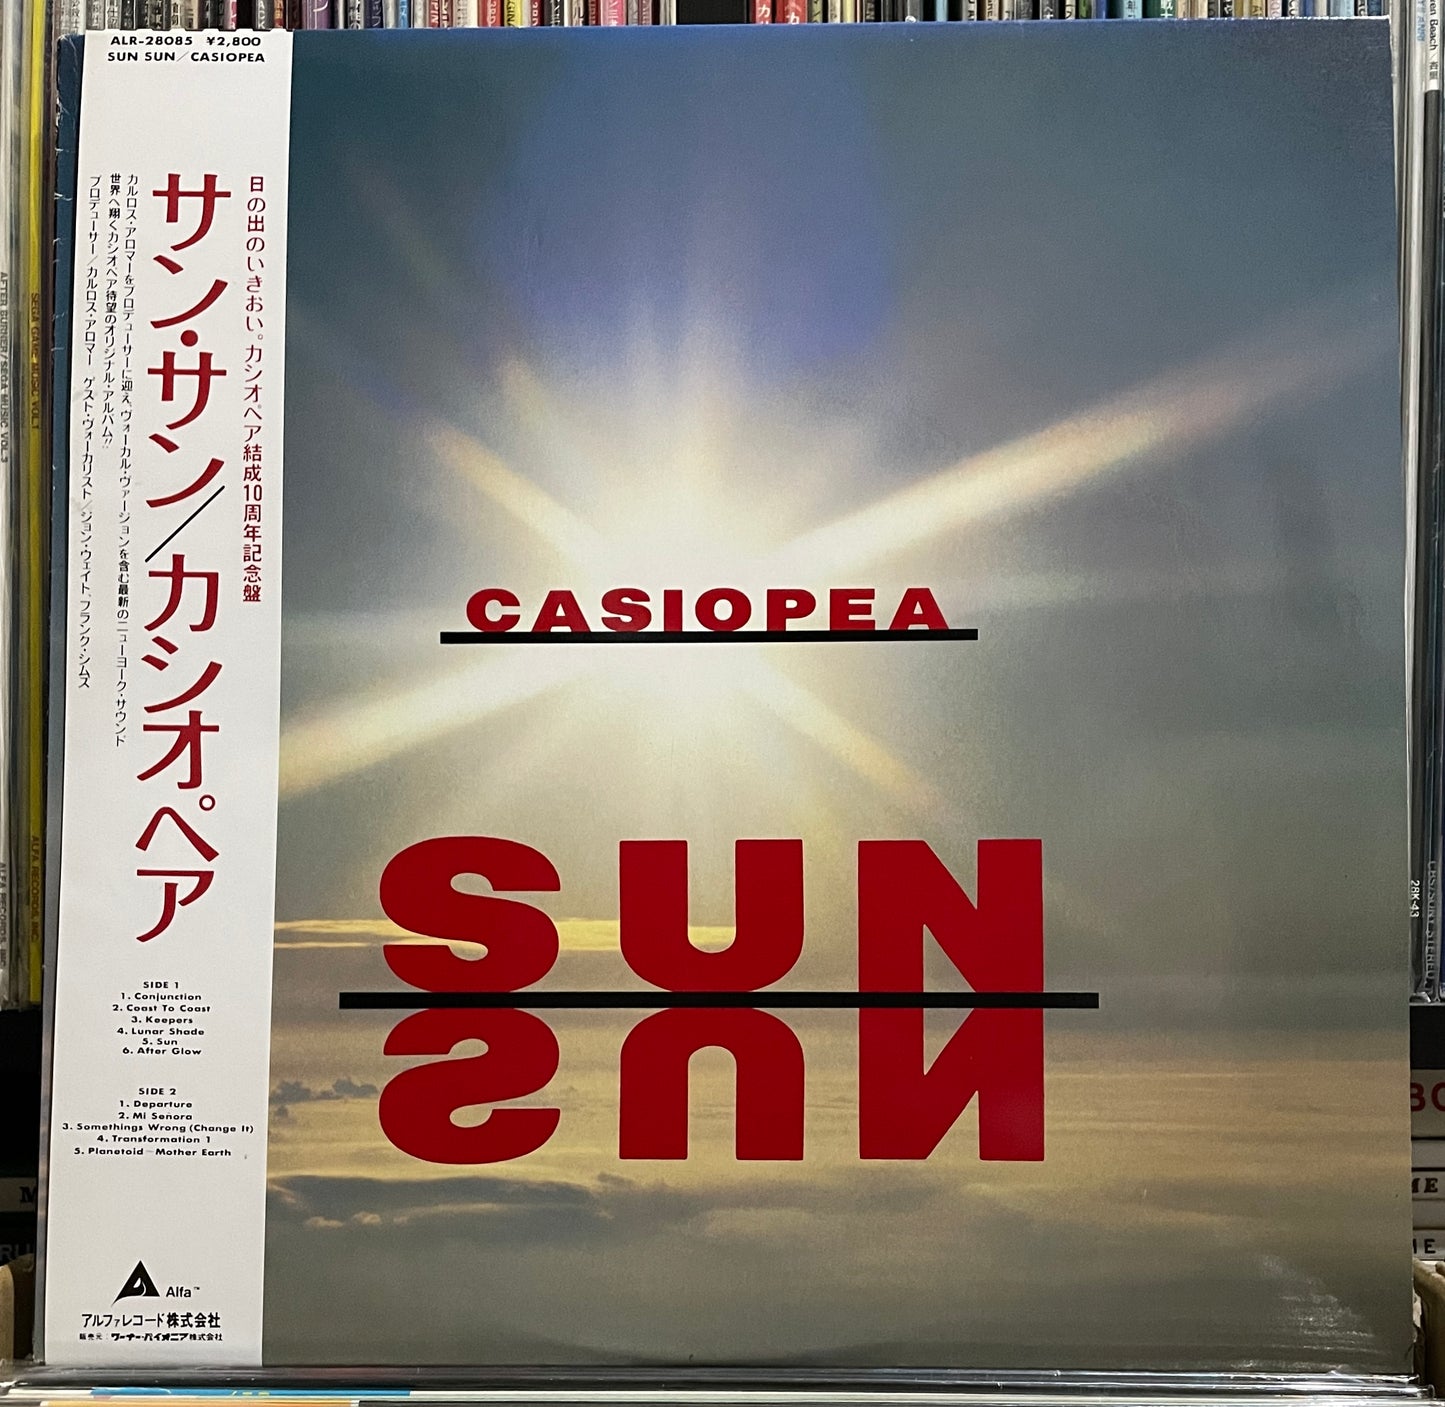 Casiopea “Sun Sun” (1986)